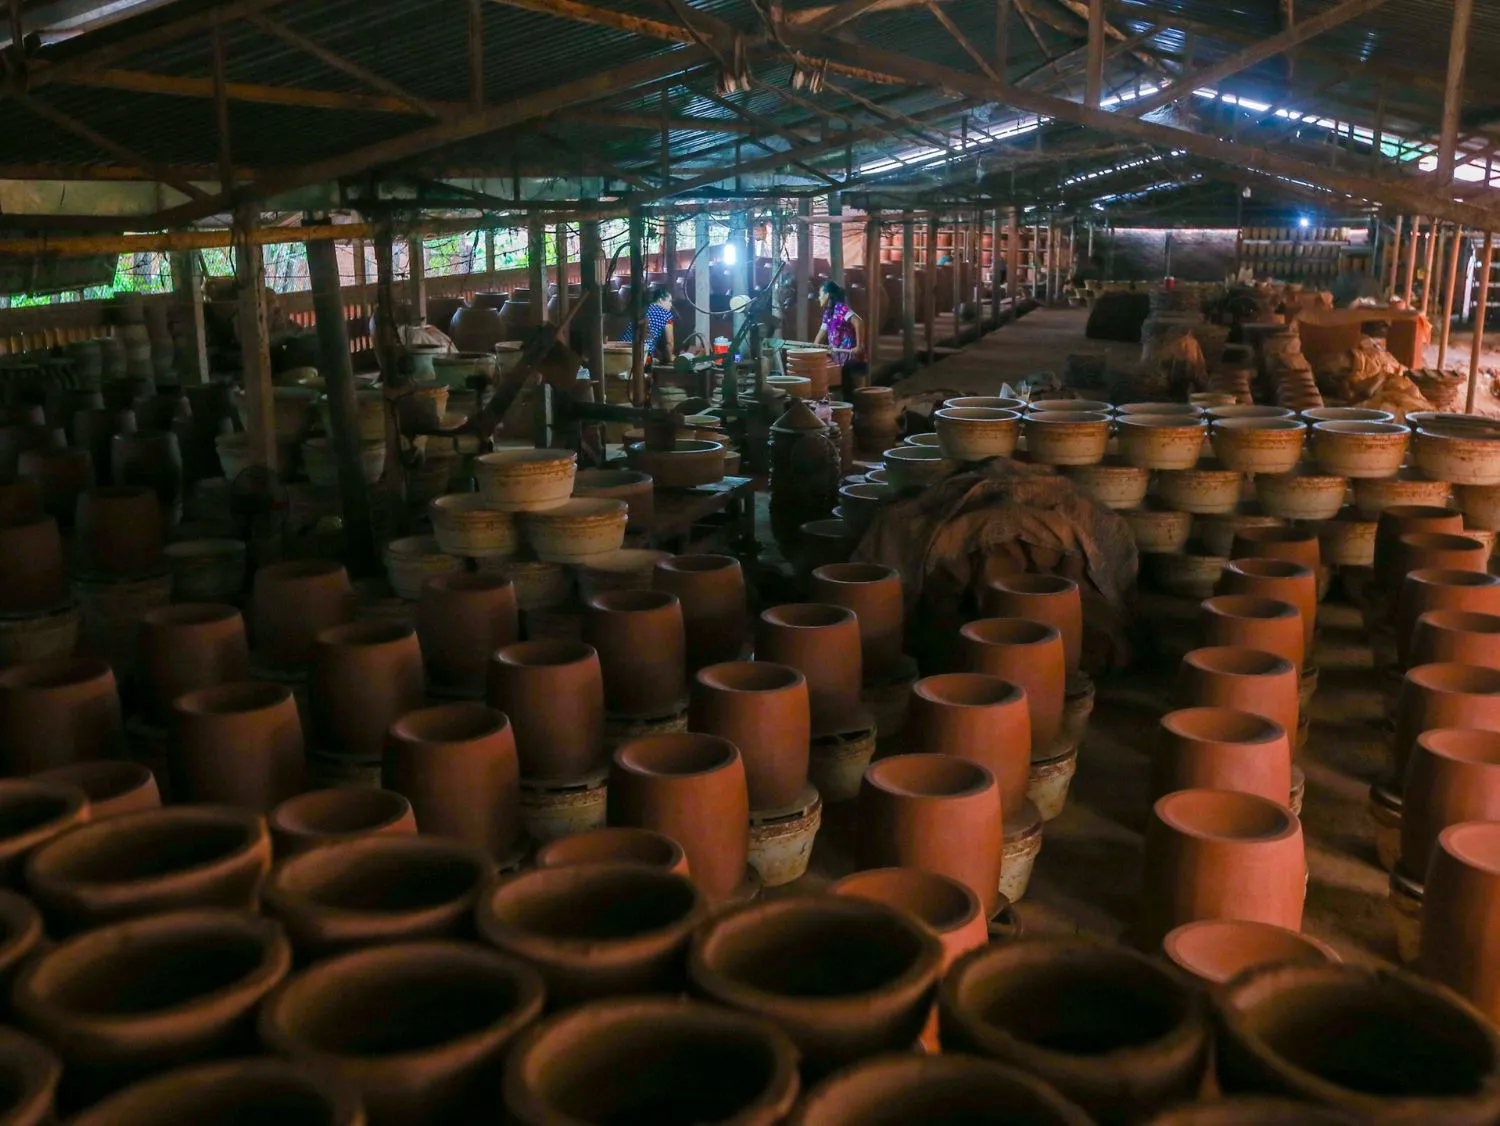 Tham quan Lò lu Đại Hưng chuyên sản xuất gốm thủ công cổ nhất Bình Dương